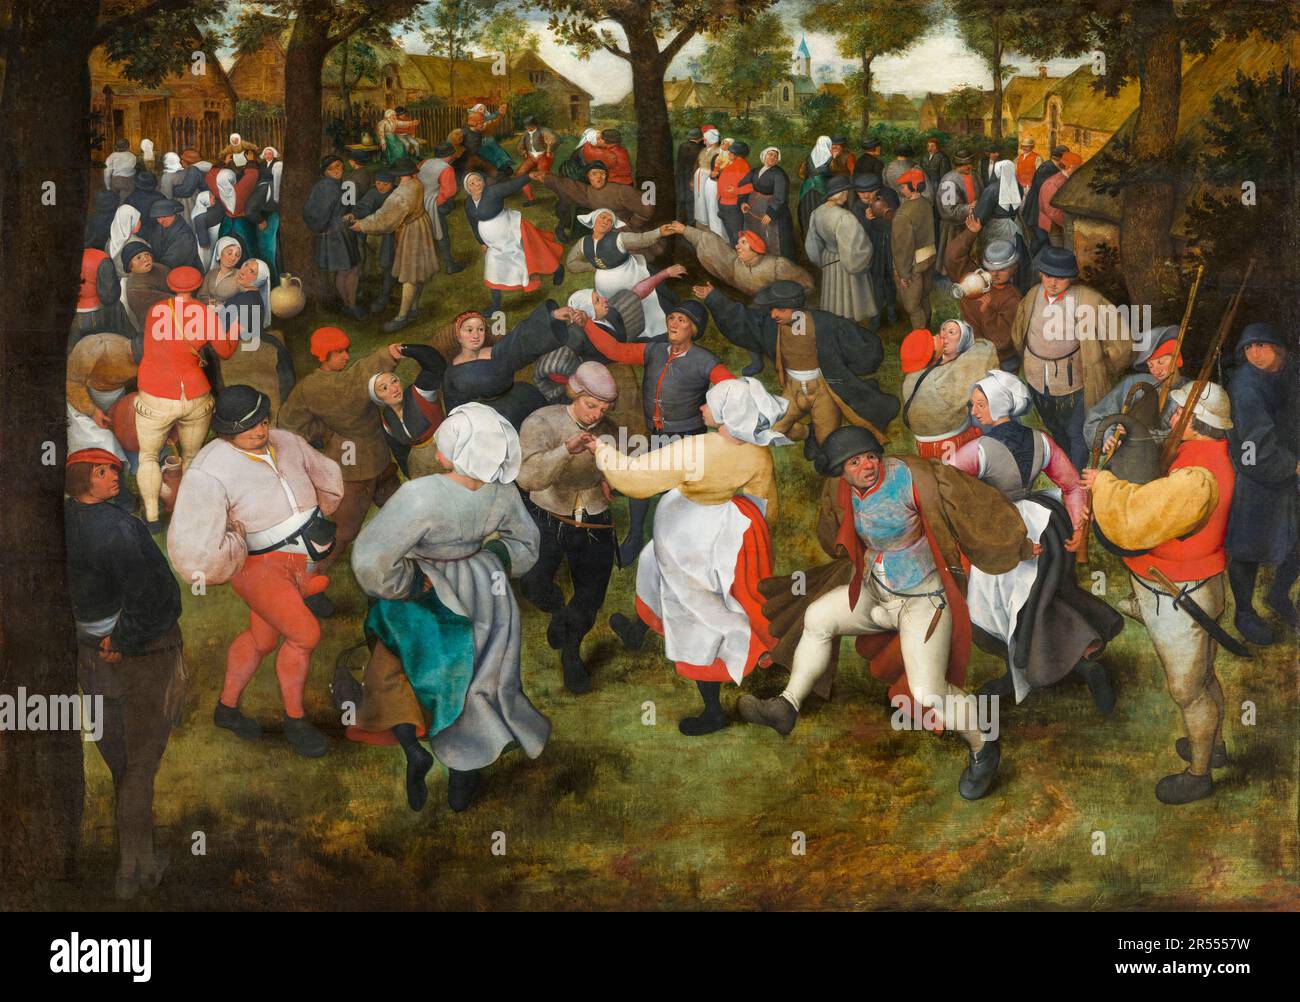 Pieter Bruegel the Elder, The Wedding Dance, painting 1566 Stock Photo